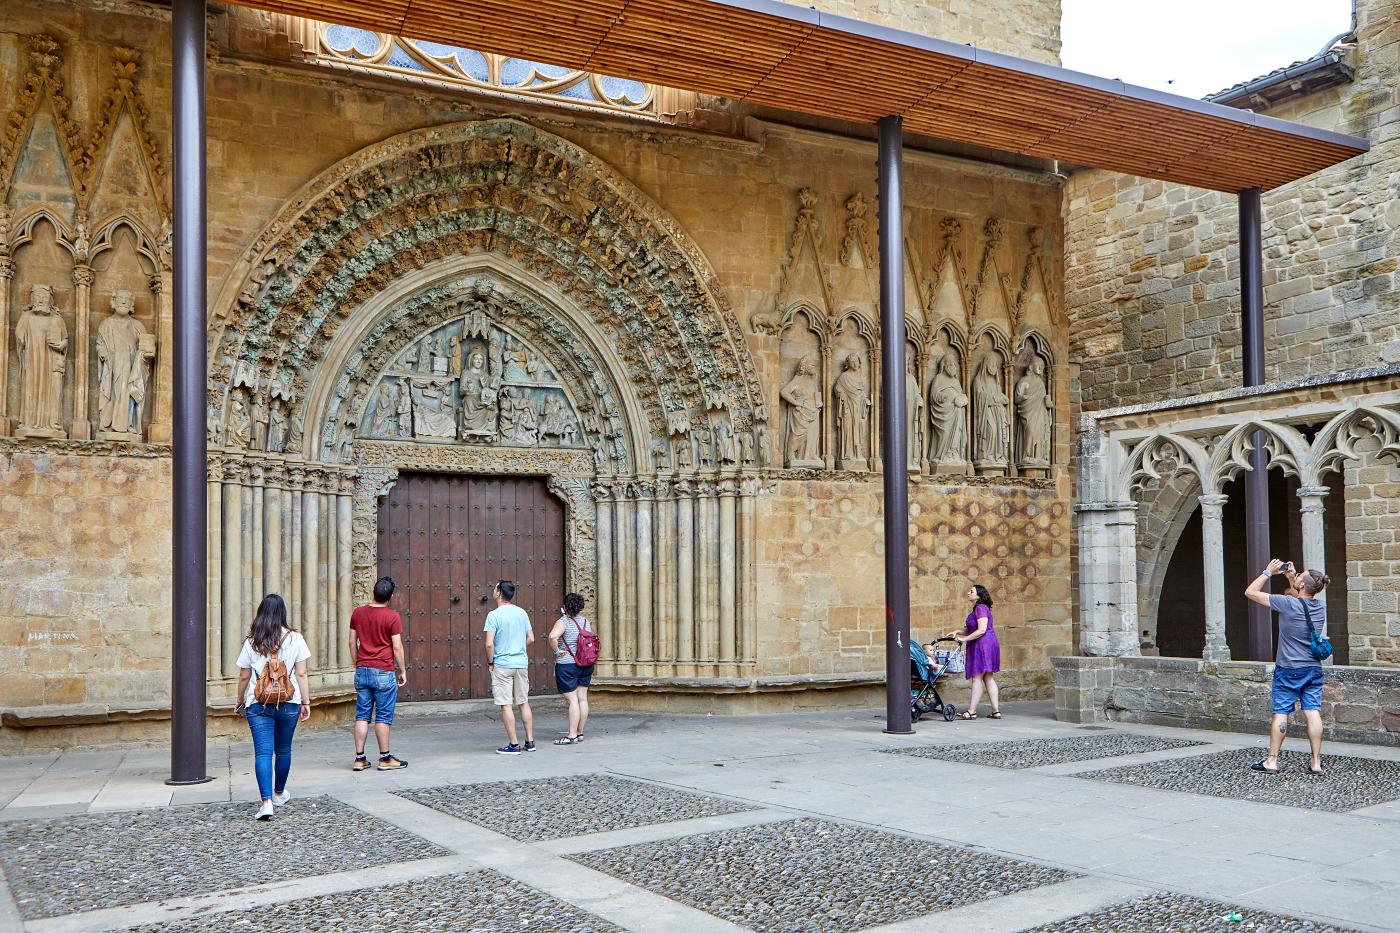 Plusieurs personnes observent la façade richement sculptée de l'église de San Pedro de Olite